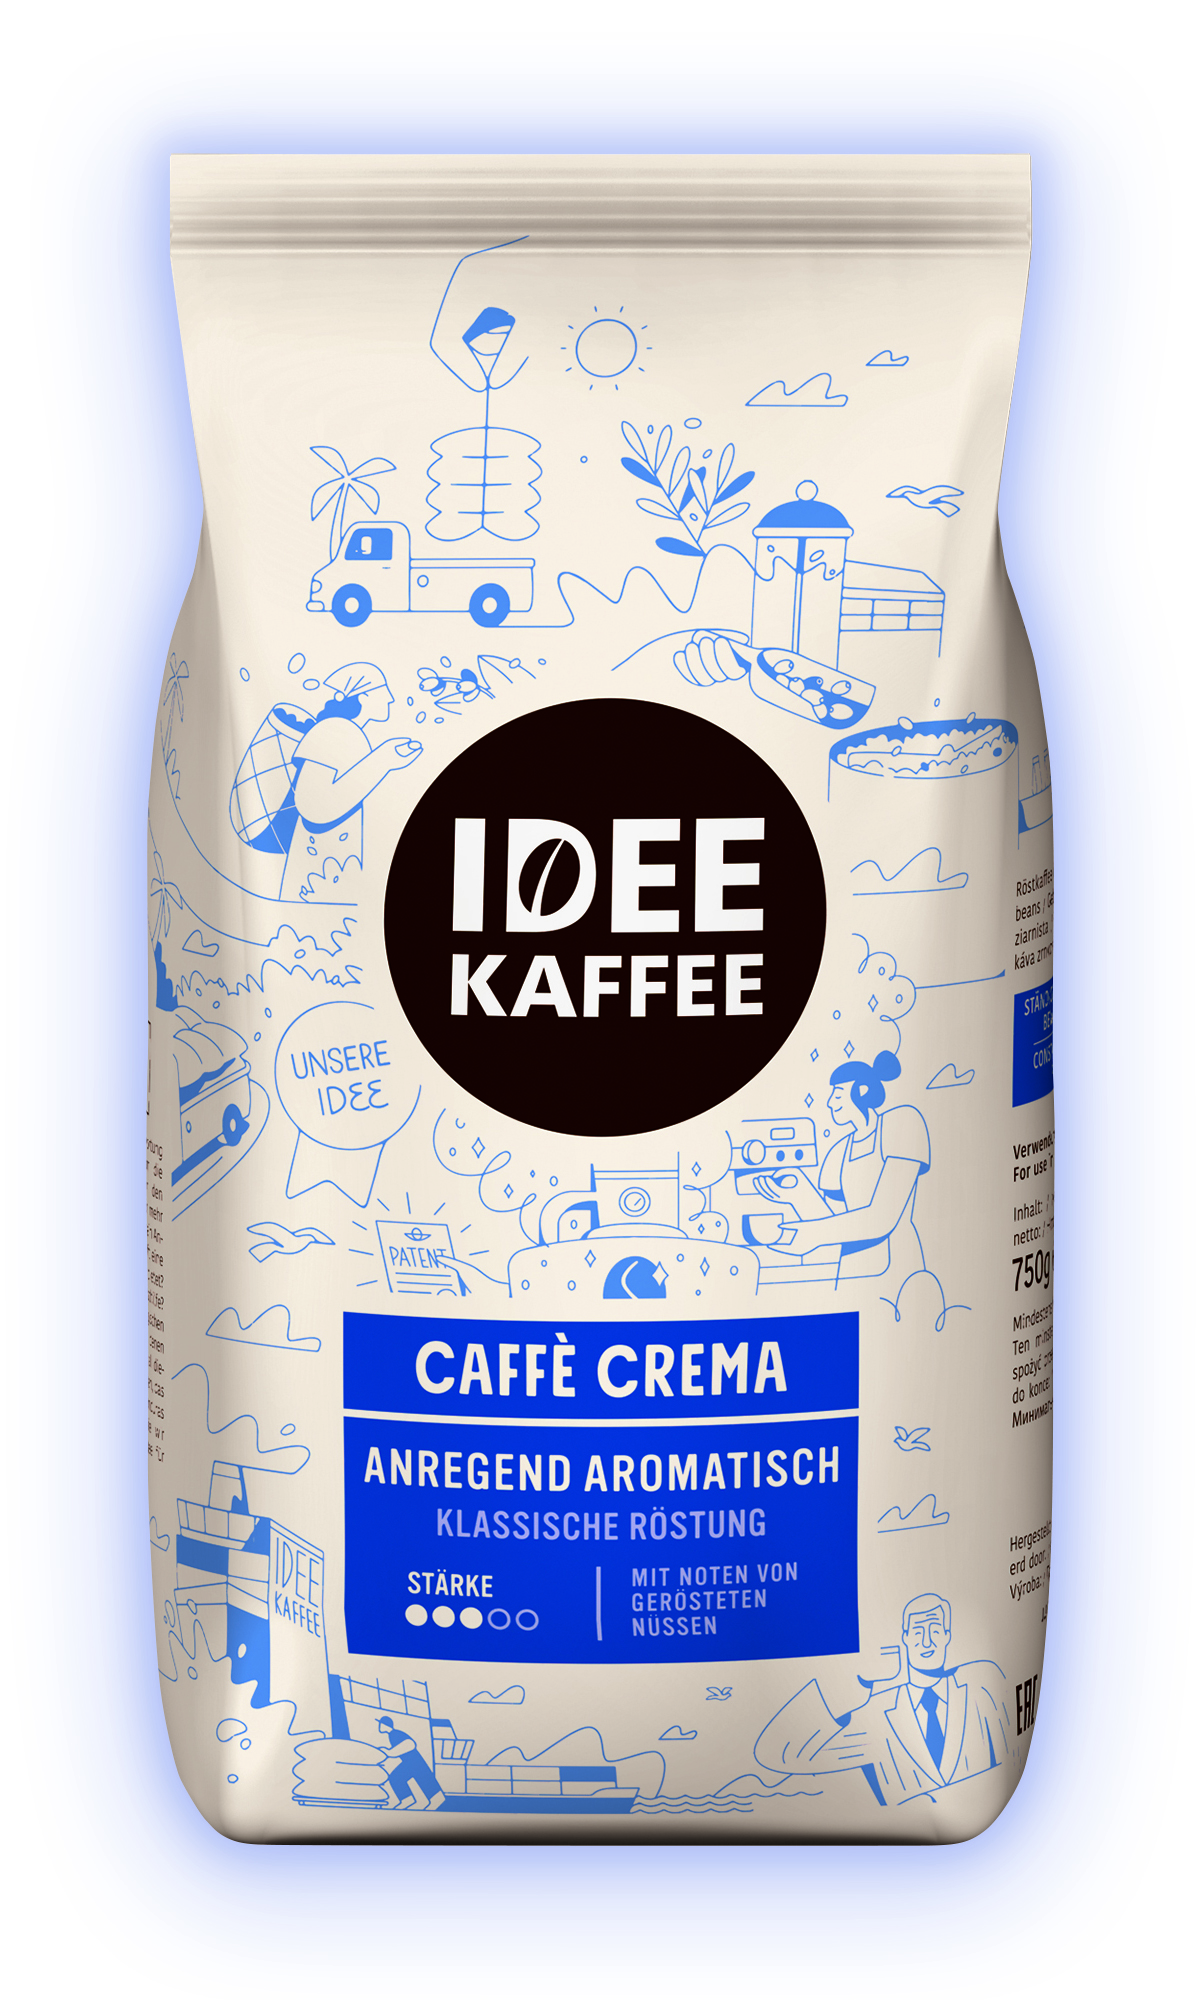 IDEE KAFFEE Caffè Crema Anregend Aromatisch 750 g ganze Bohne